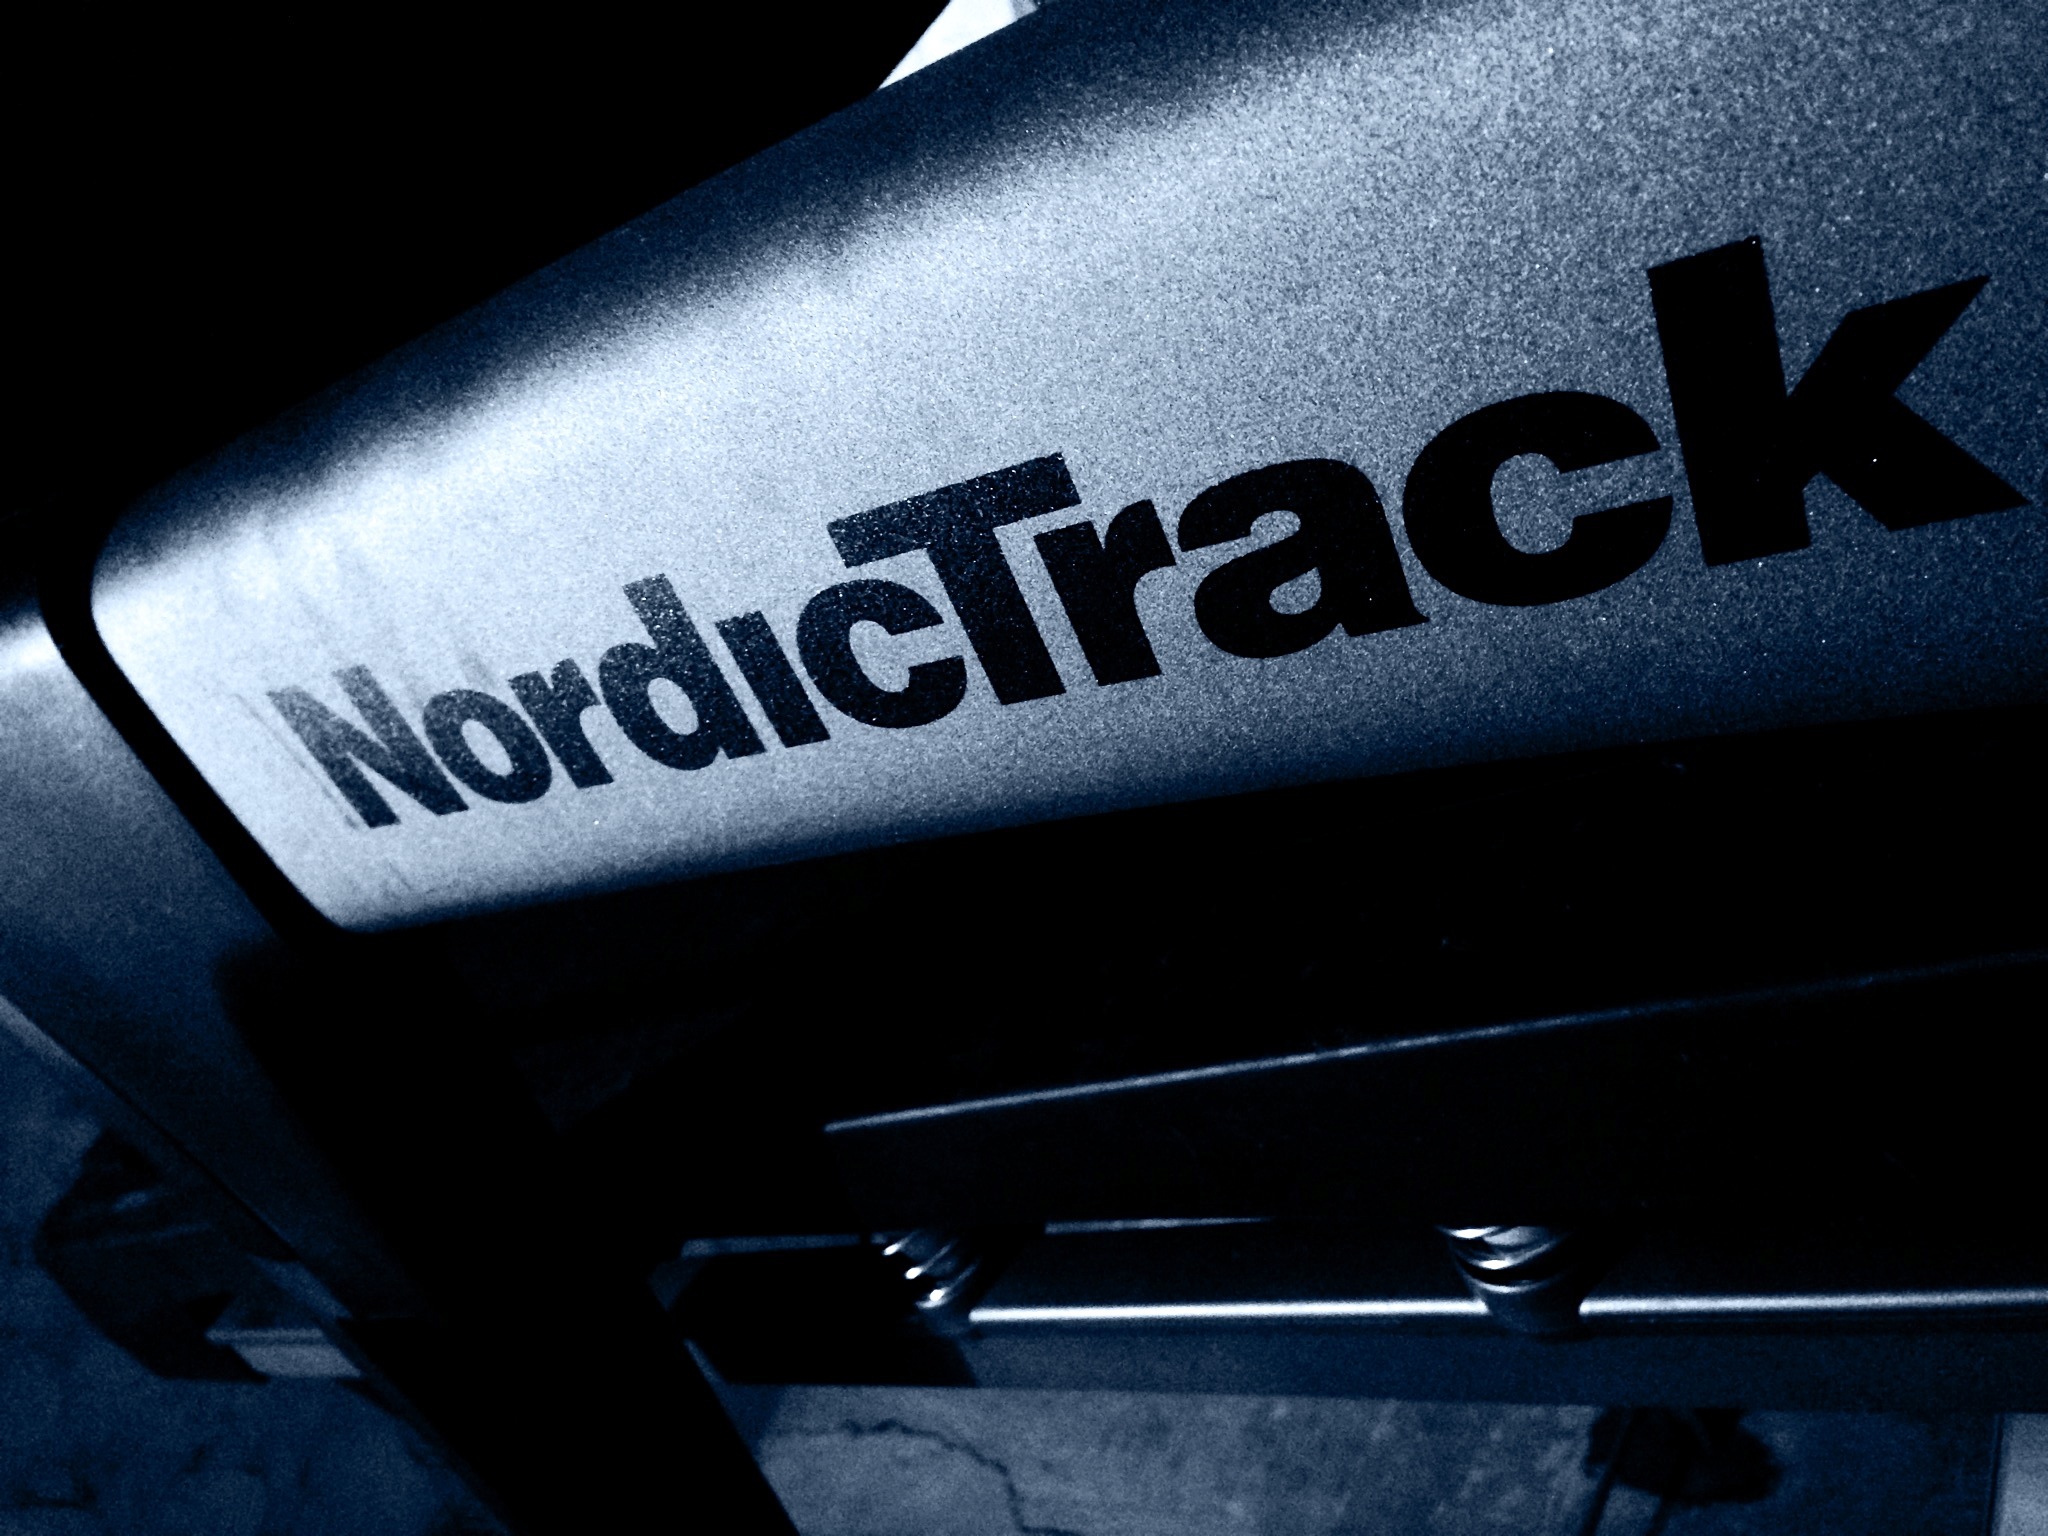 Le tapis des 6 jours sera un Nordictrack ou ne sera pas.